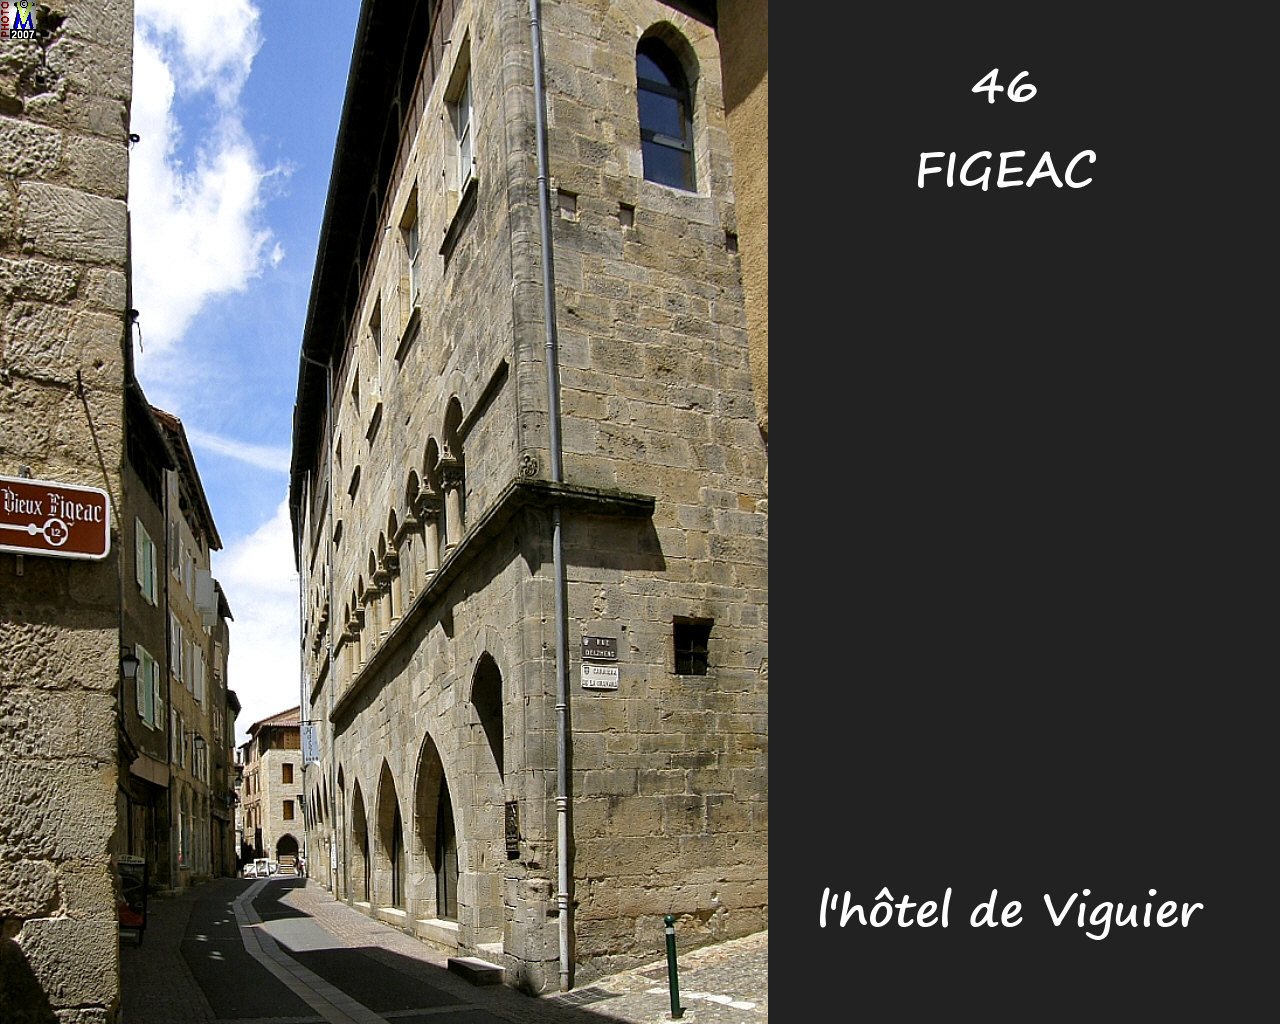 46FIGEAC_H-Viguier_102.jpg